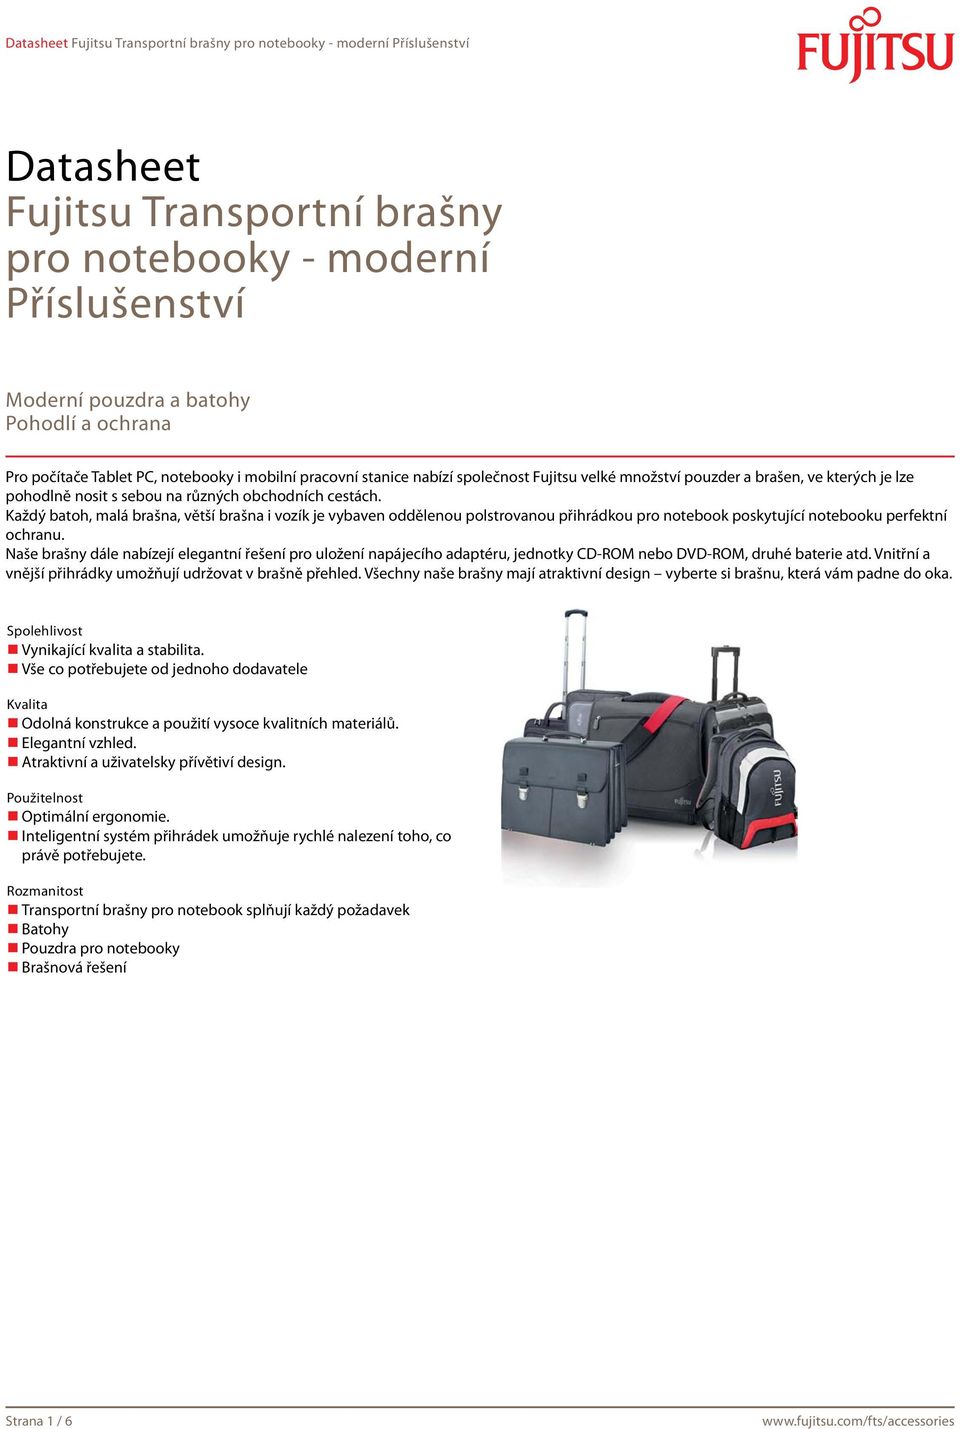 Každý batoh, malá brašna, větší brašna i vozík je vybaven oddělenou polstrovanou přihrádkou pro notebook poskytující notebooku perfektní ochranu.